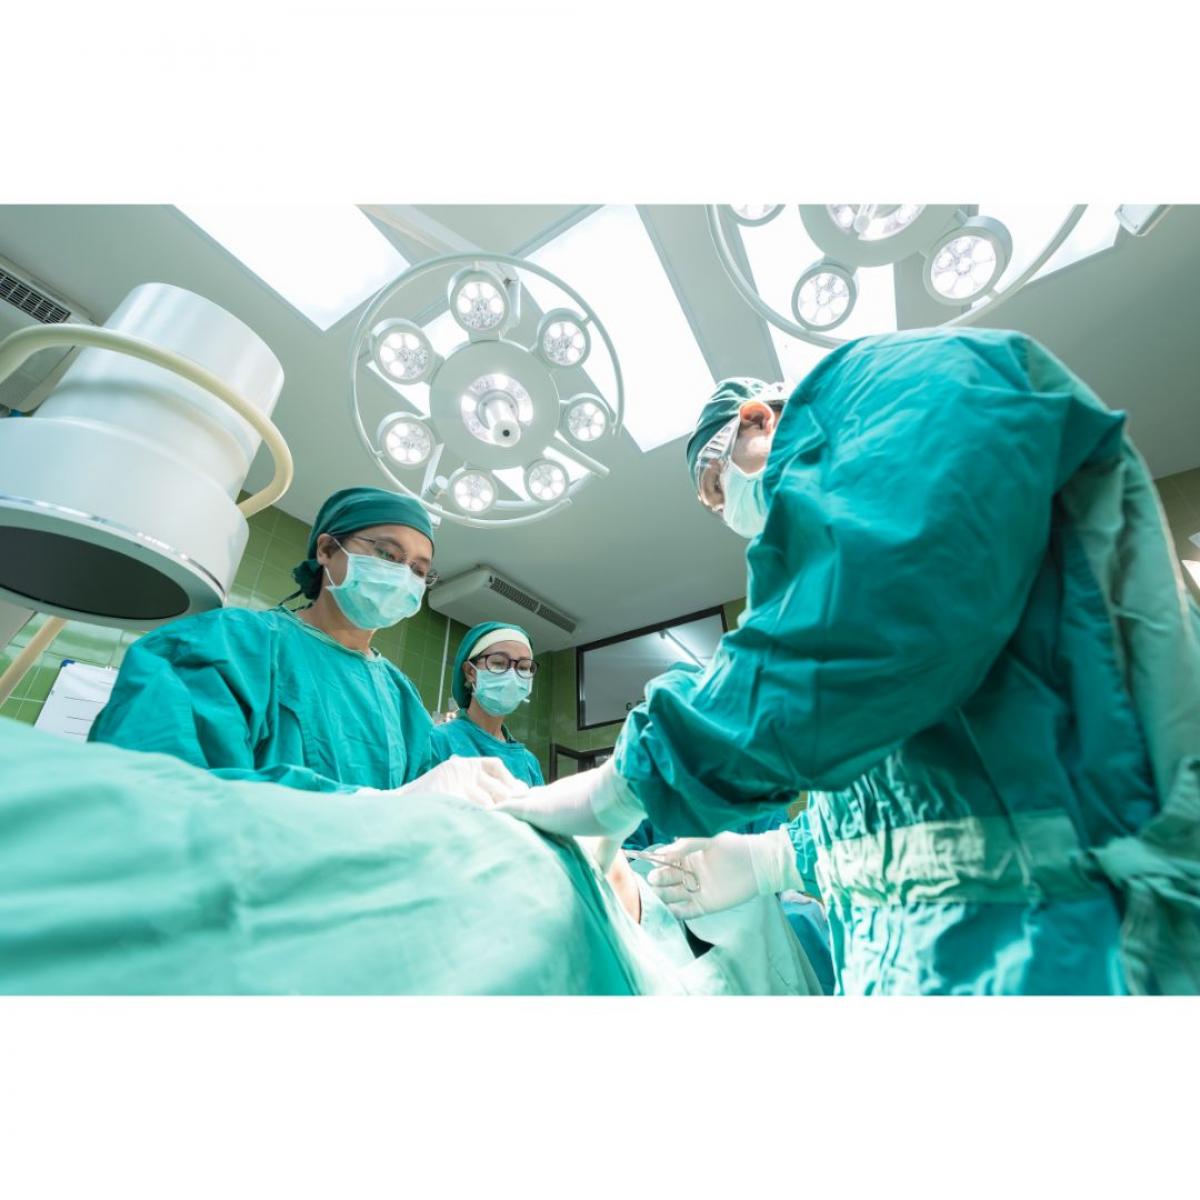 Se dispara la demora en las listas de espera para cirugía en Madrid